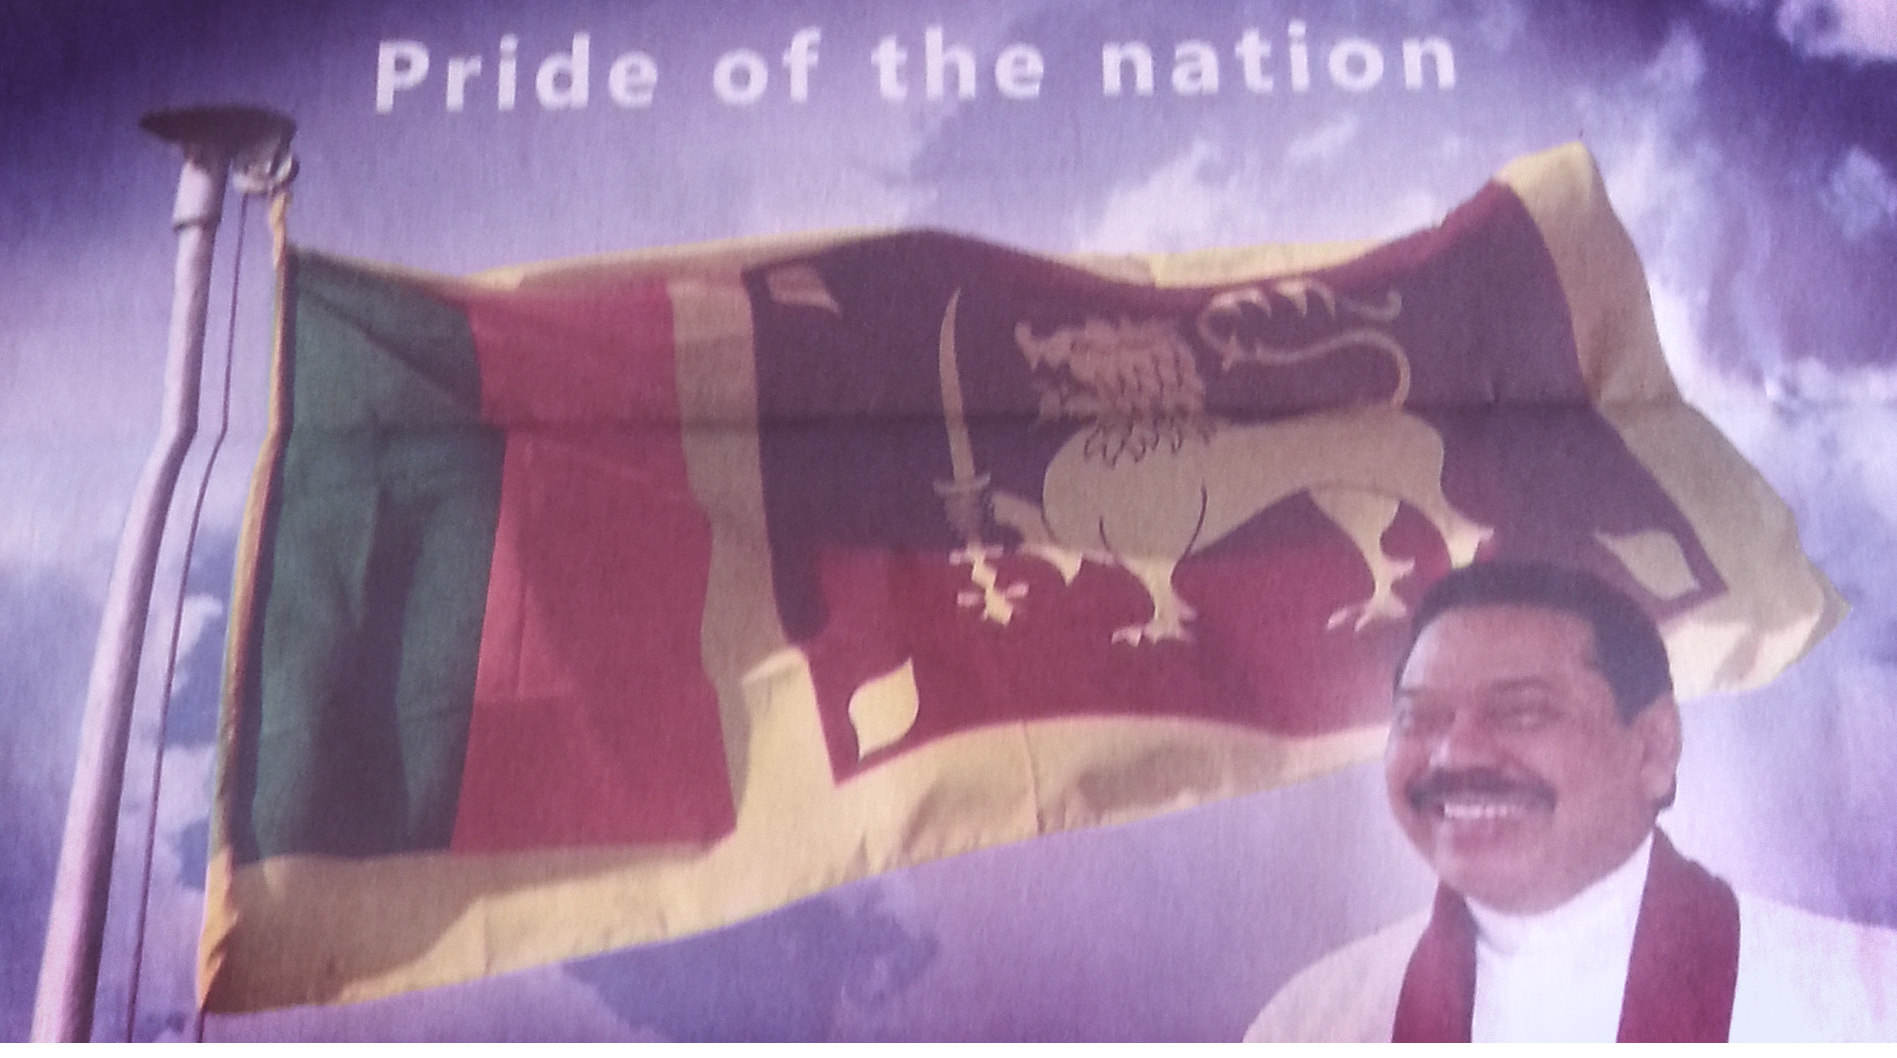 Mahinda Rajapaksa